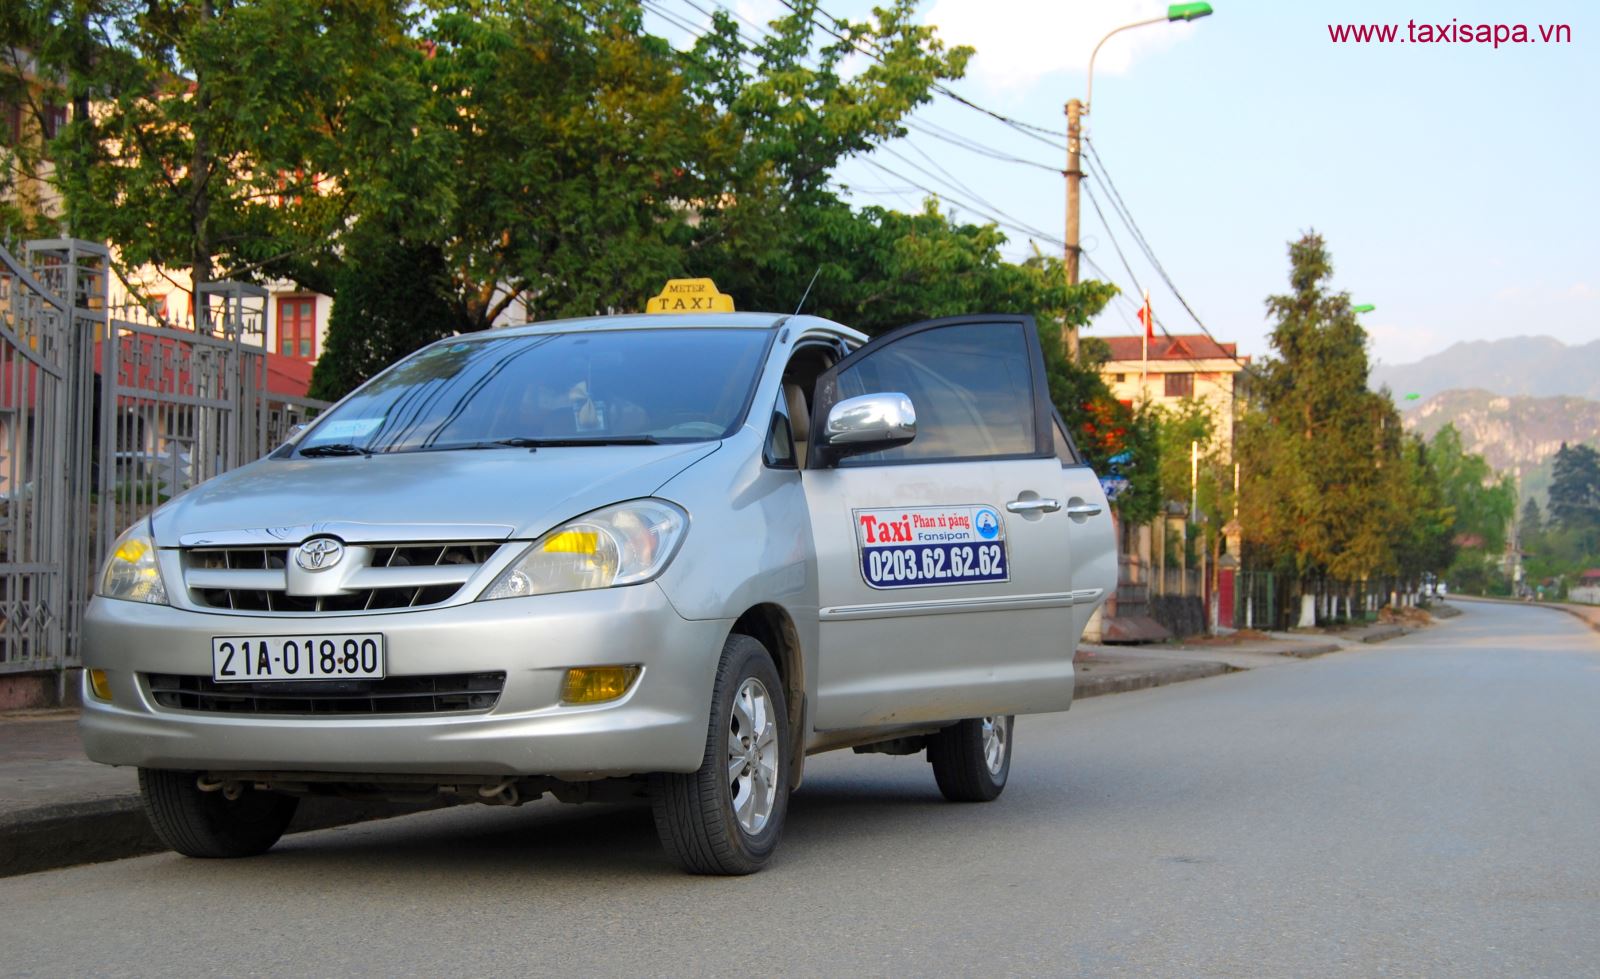 Top 10 những hãng taxi uy tín, đảm bảo chất lượng dành cho du khách đi taxi ở Sapa 3